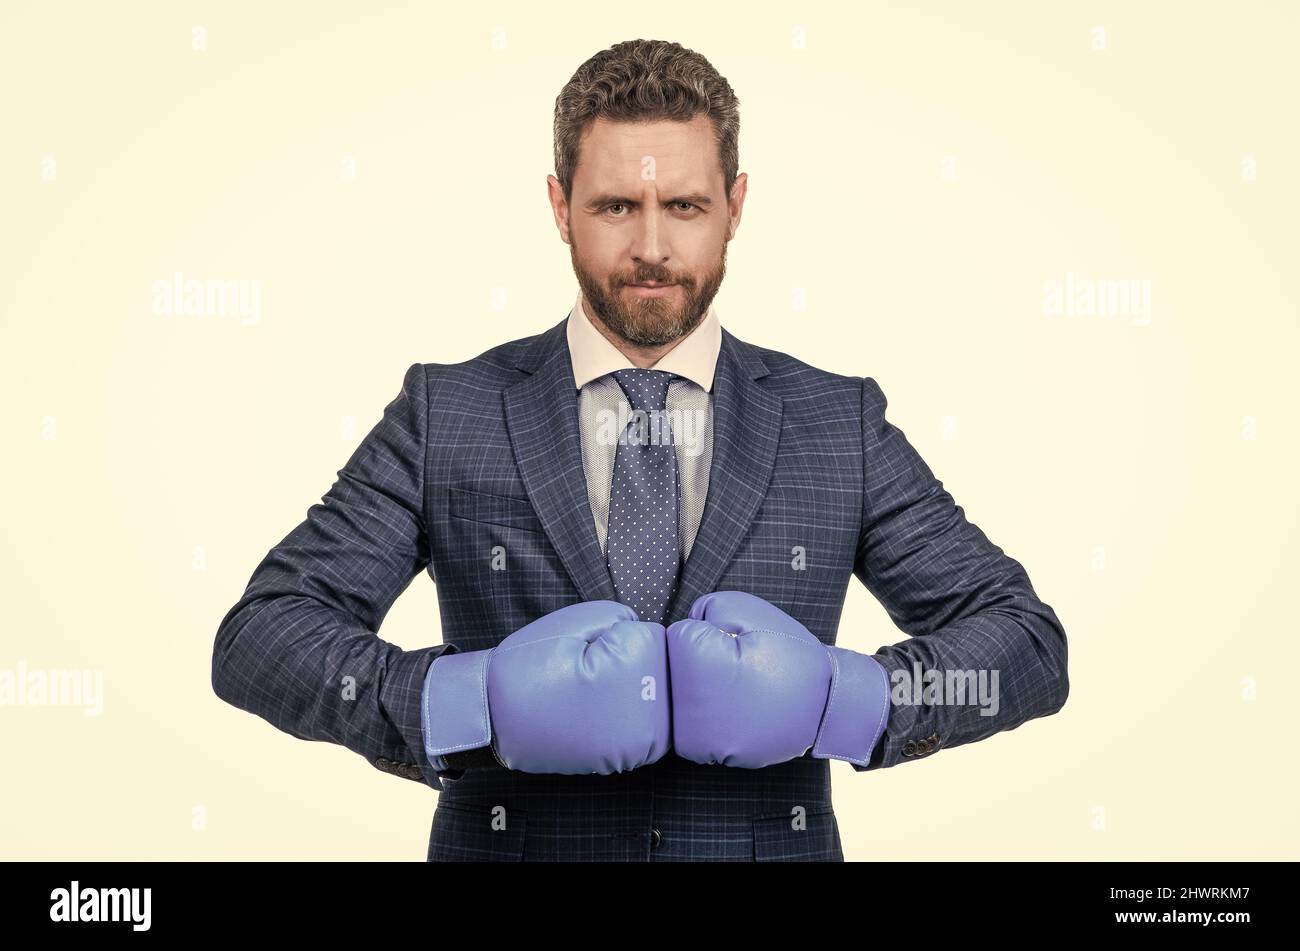 Ill bussa voi fuori. I boss seri indossano guanti da boxe. Concorso di pugilato. Rivalità aziendale Foto Stock